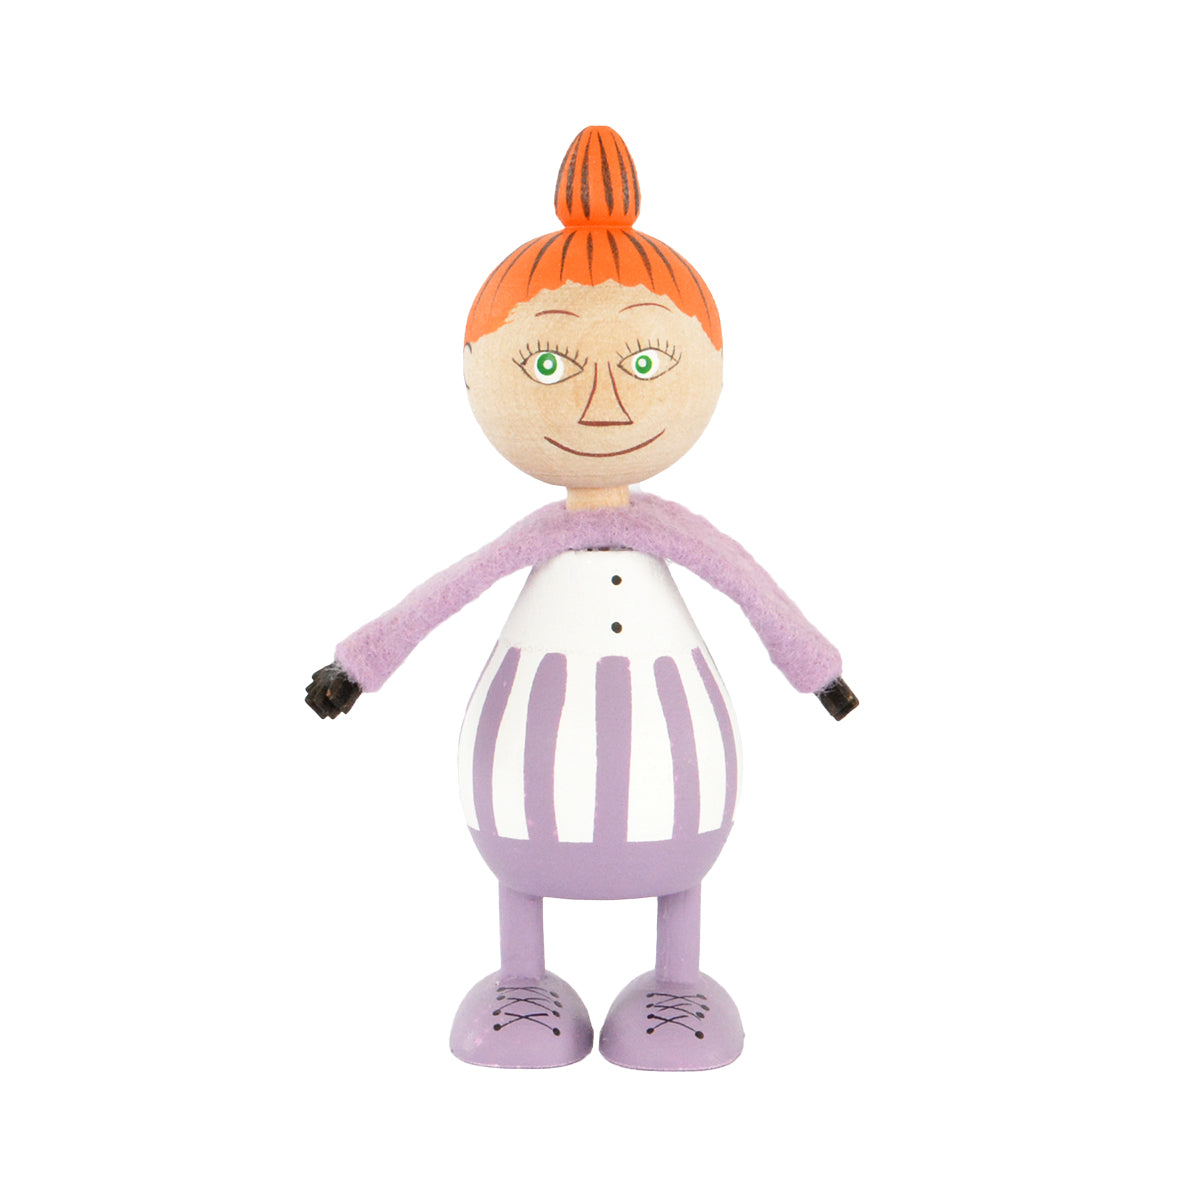 Moomin ムーミン Puulelut プーレルット 木製手描き人形 ( ミムラ )